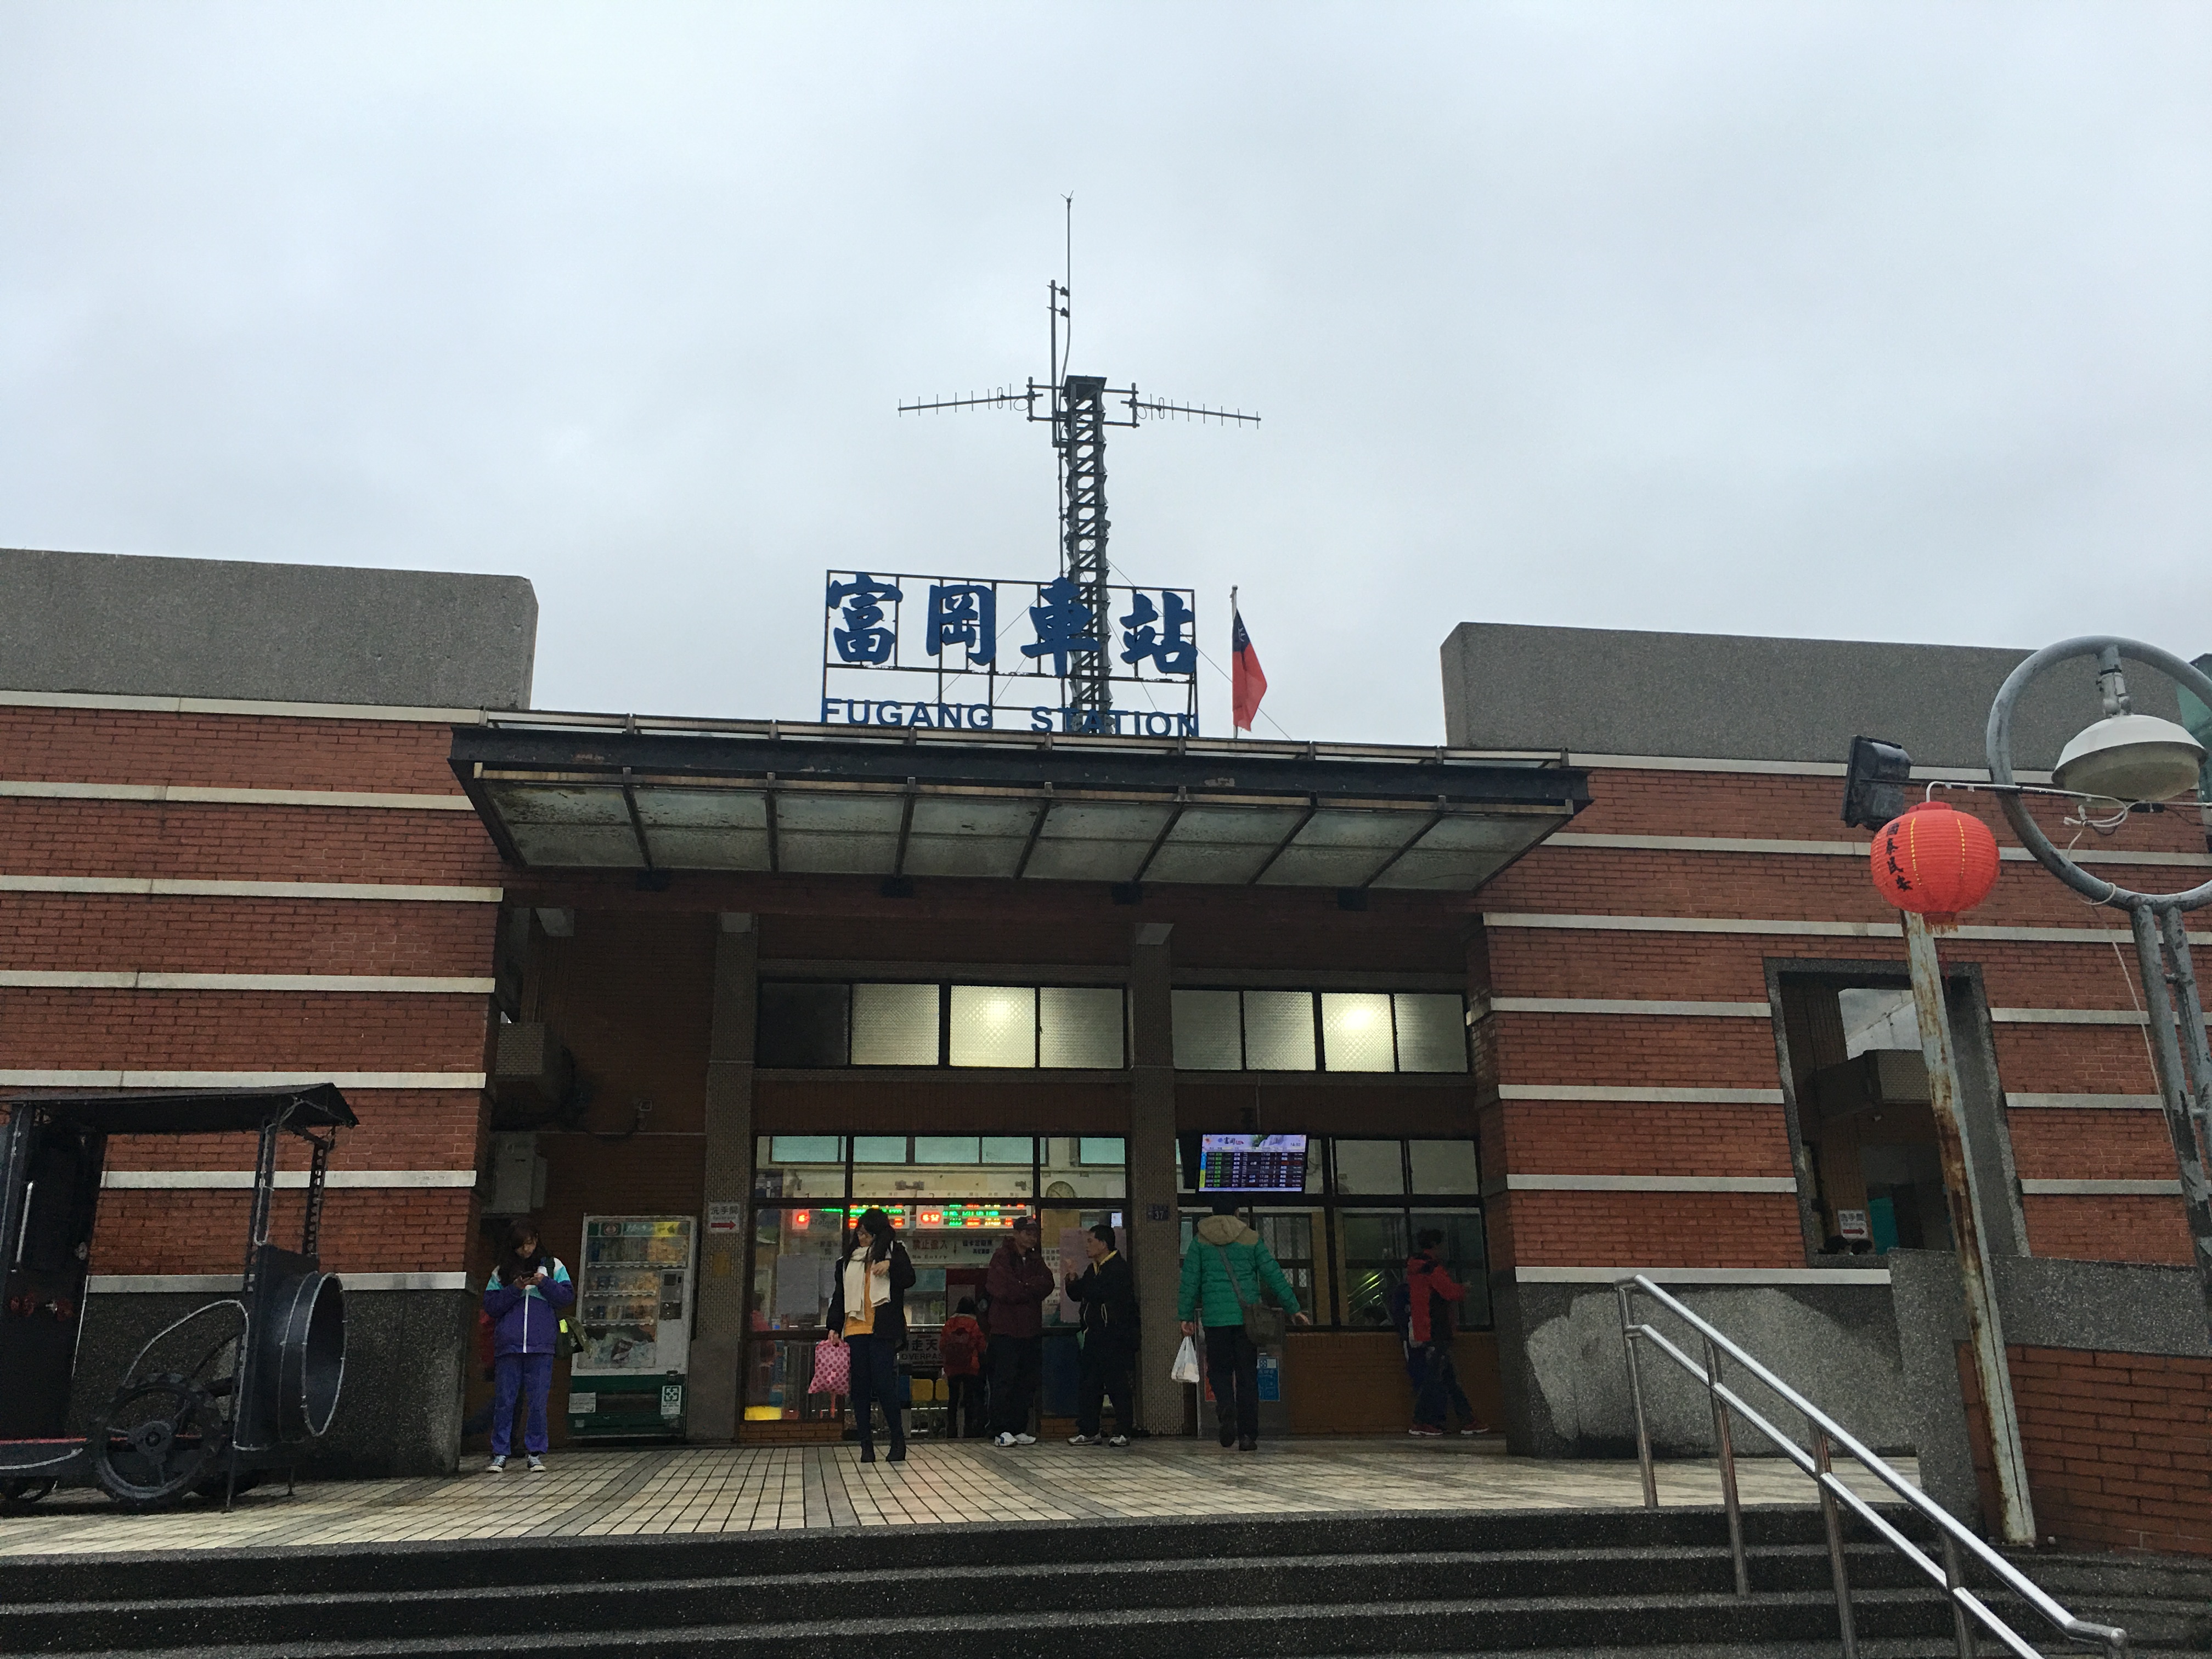 富岡車站